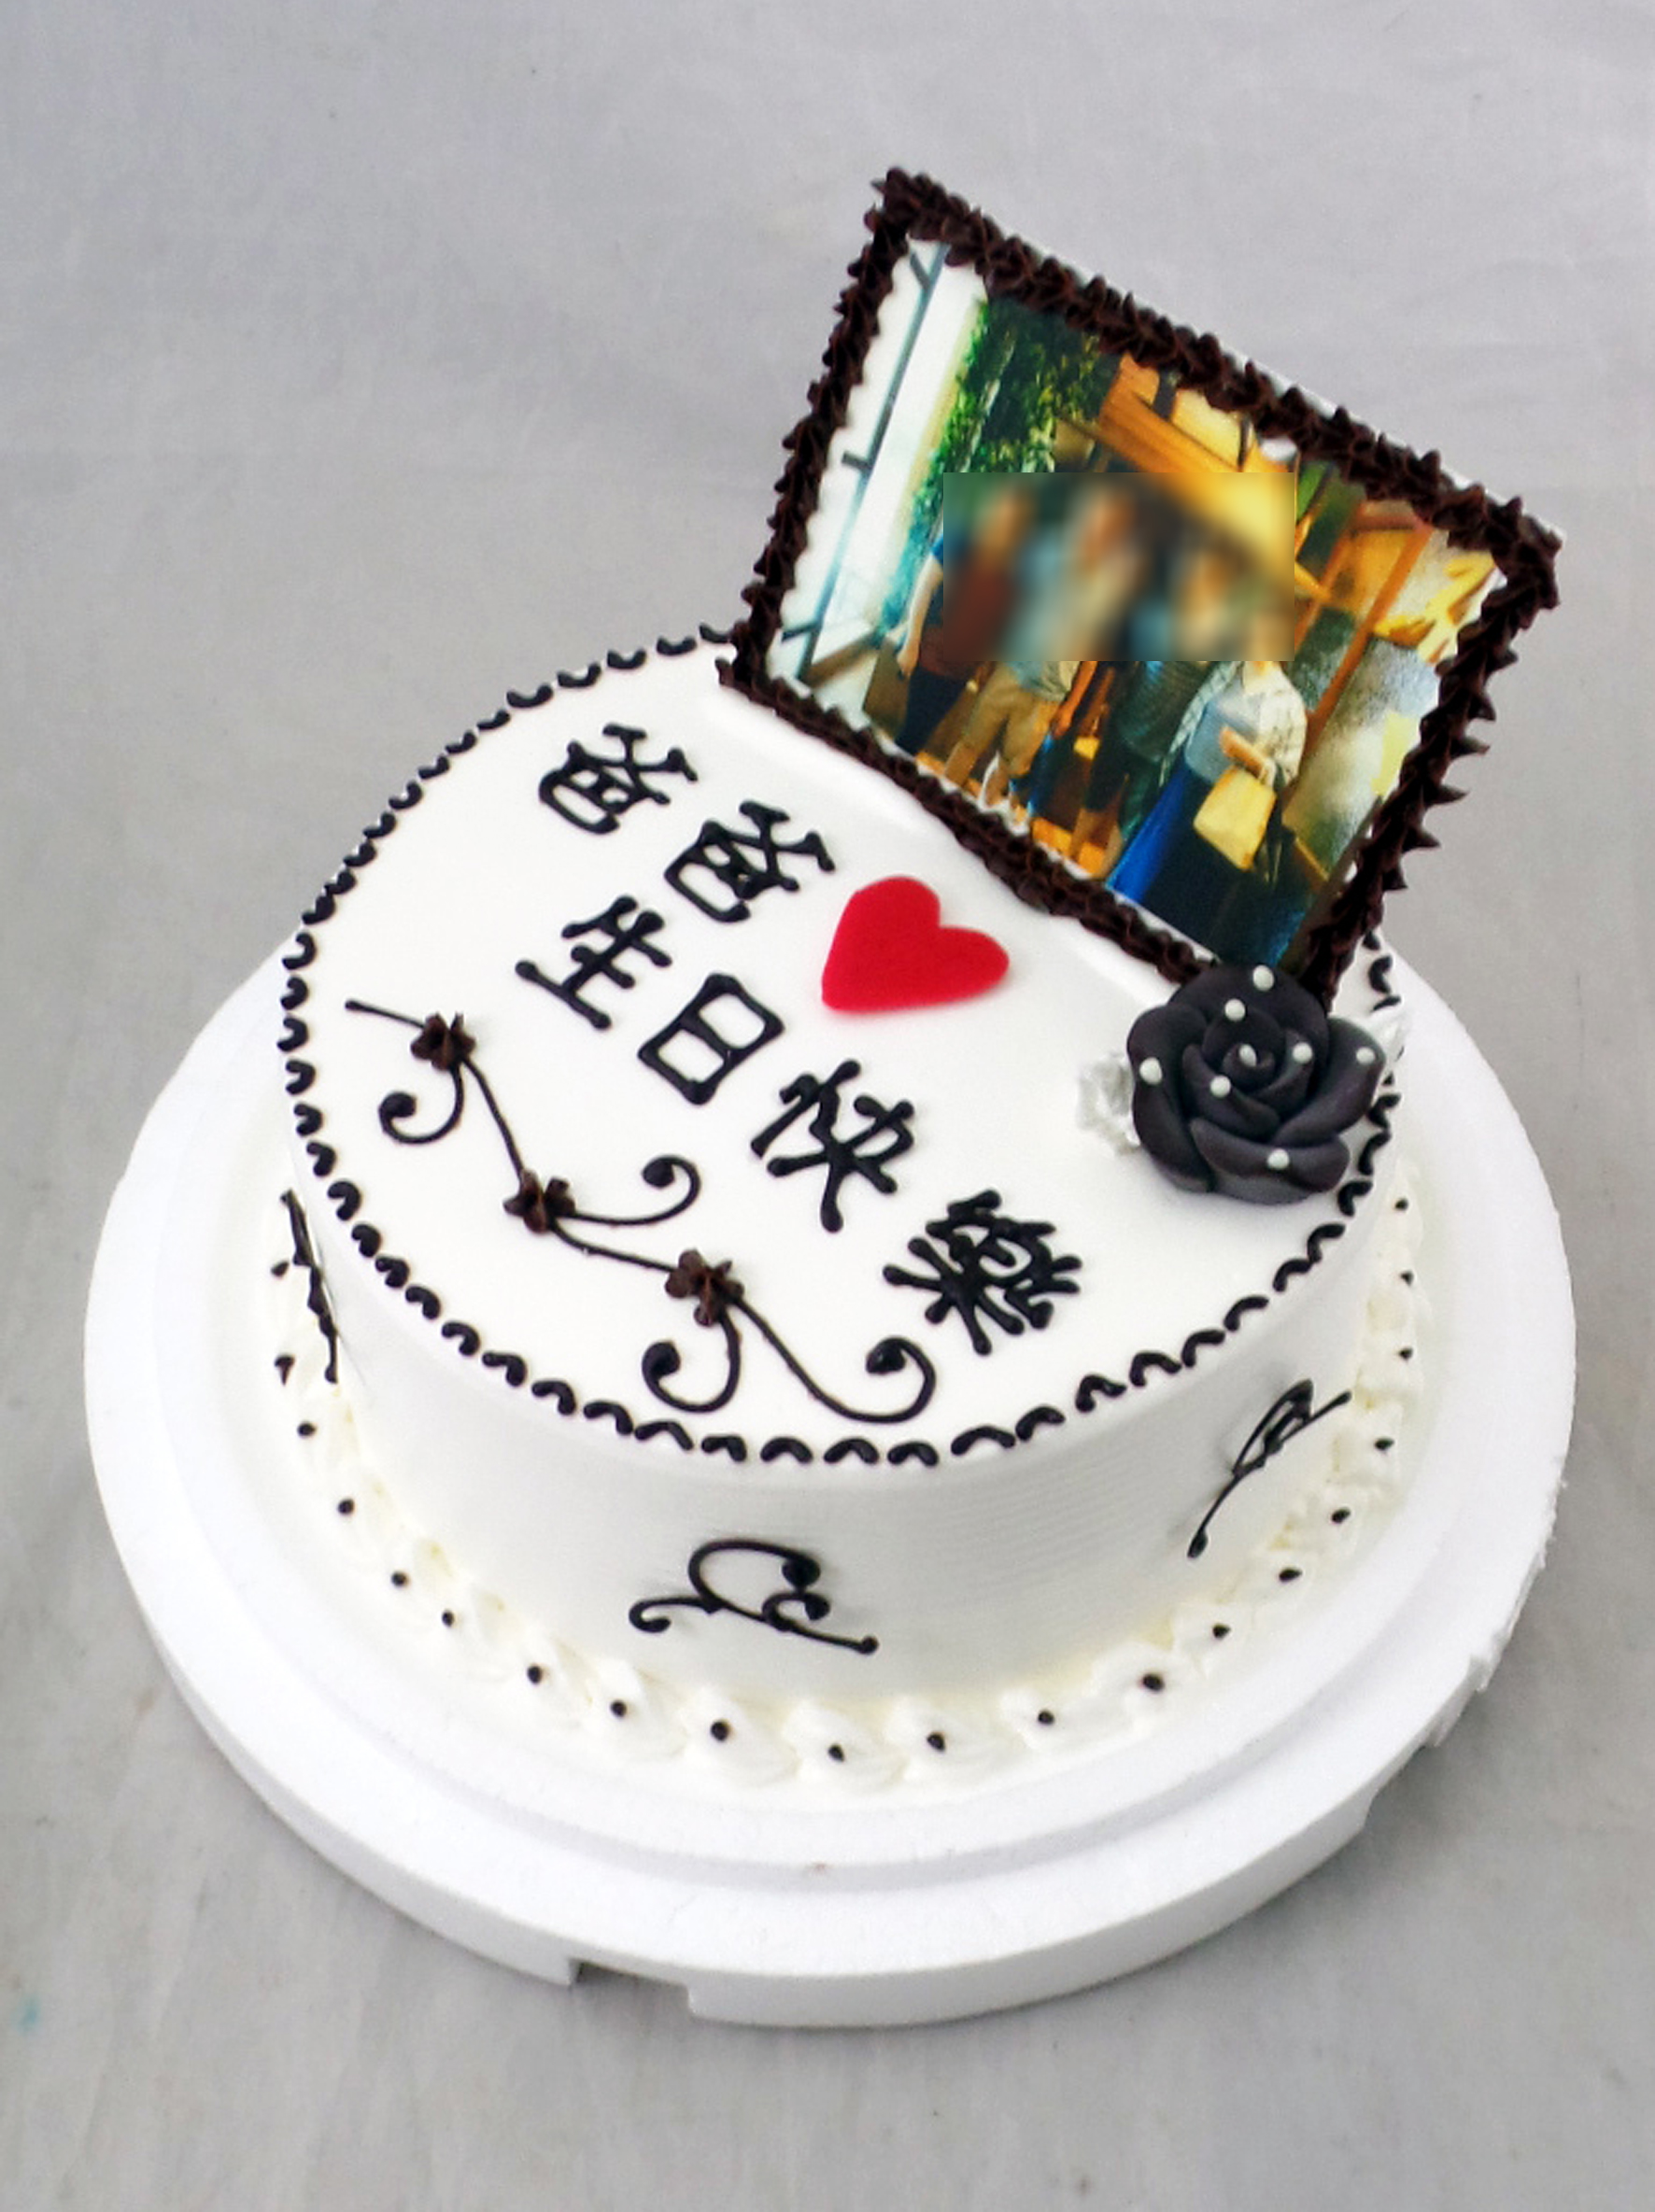 蛋糕先生蛋糕店‧一德軒造型蛋糕‧各式生日蛋糕、造型蛋糕、創意蛋糕、卡通蛋糕、數位蛋糕、相片蛋糕、結婚蛋糕、情趣蛋糕、提拉米蘇、父親節蛋糕 ...